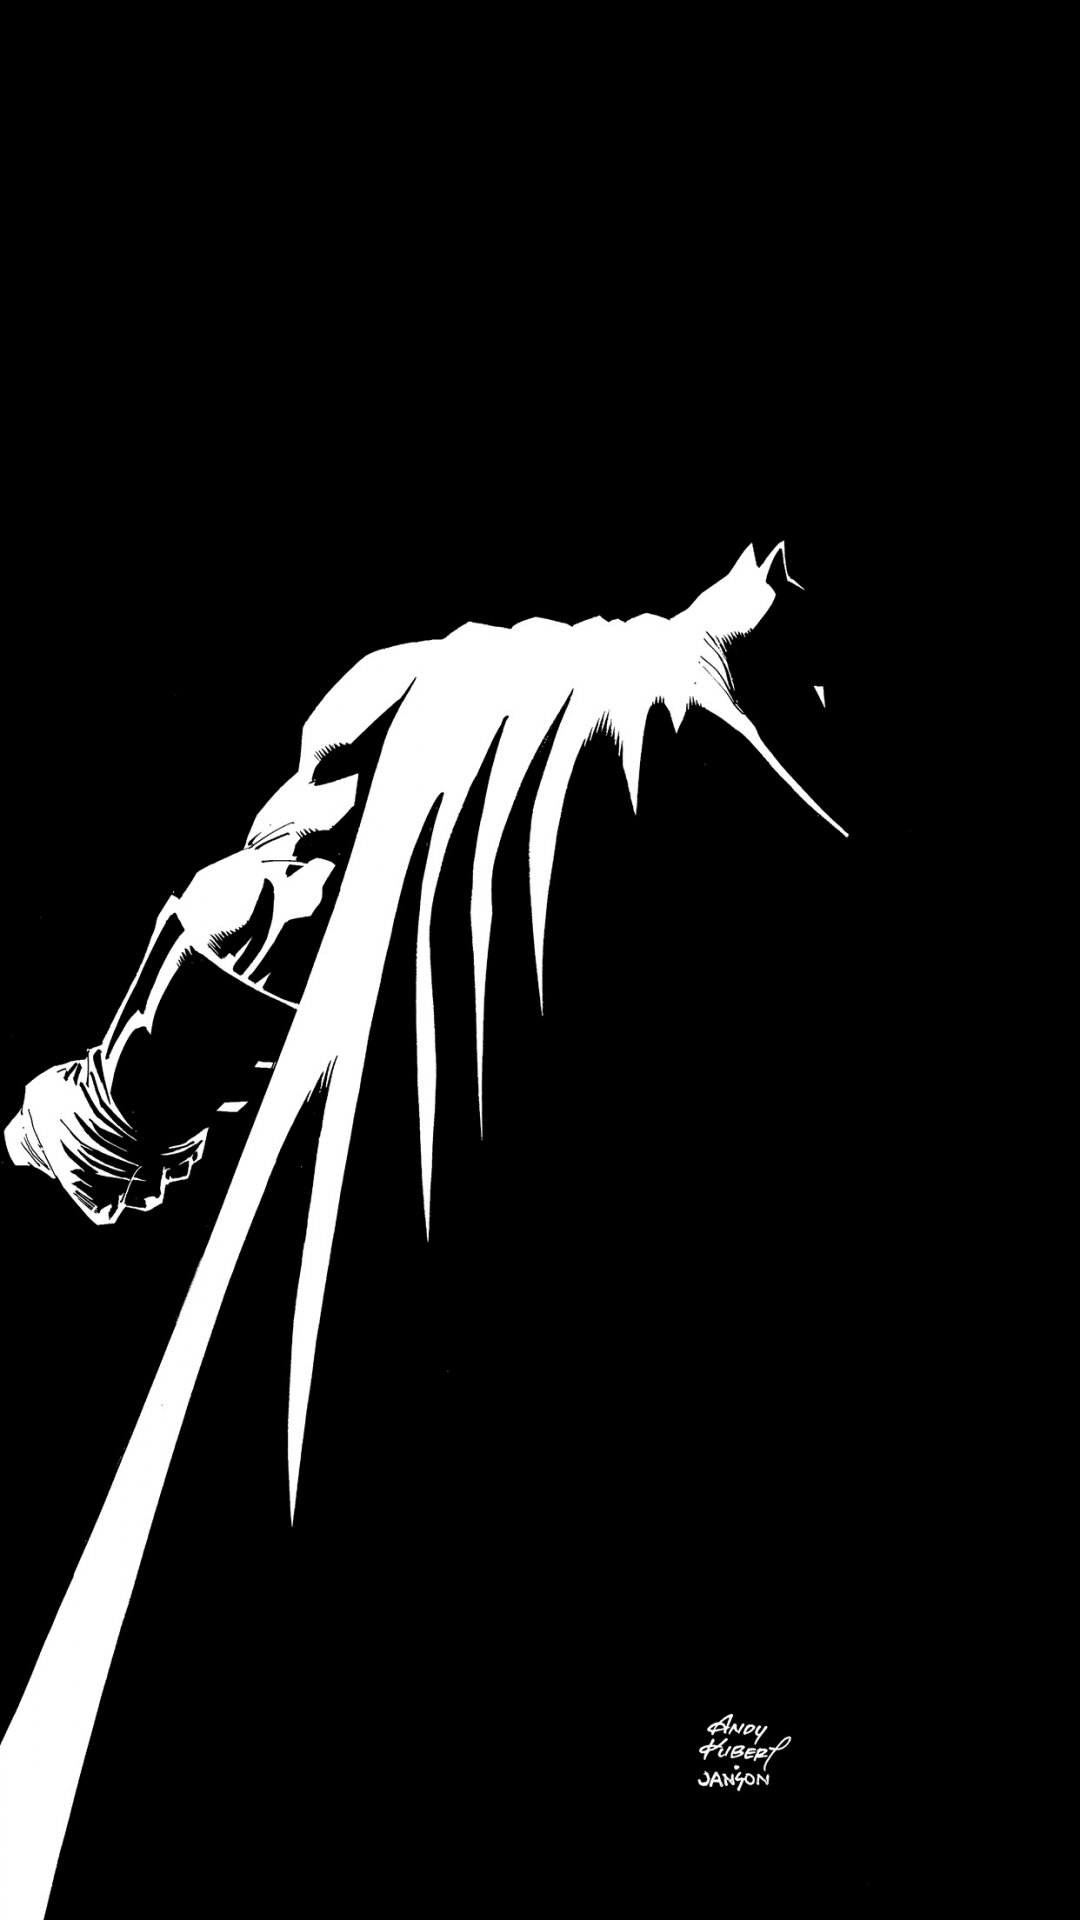 黑白色调的蝙蝠侠背影创意,高清图片,手机壁纸